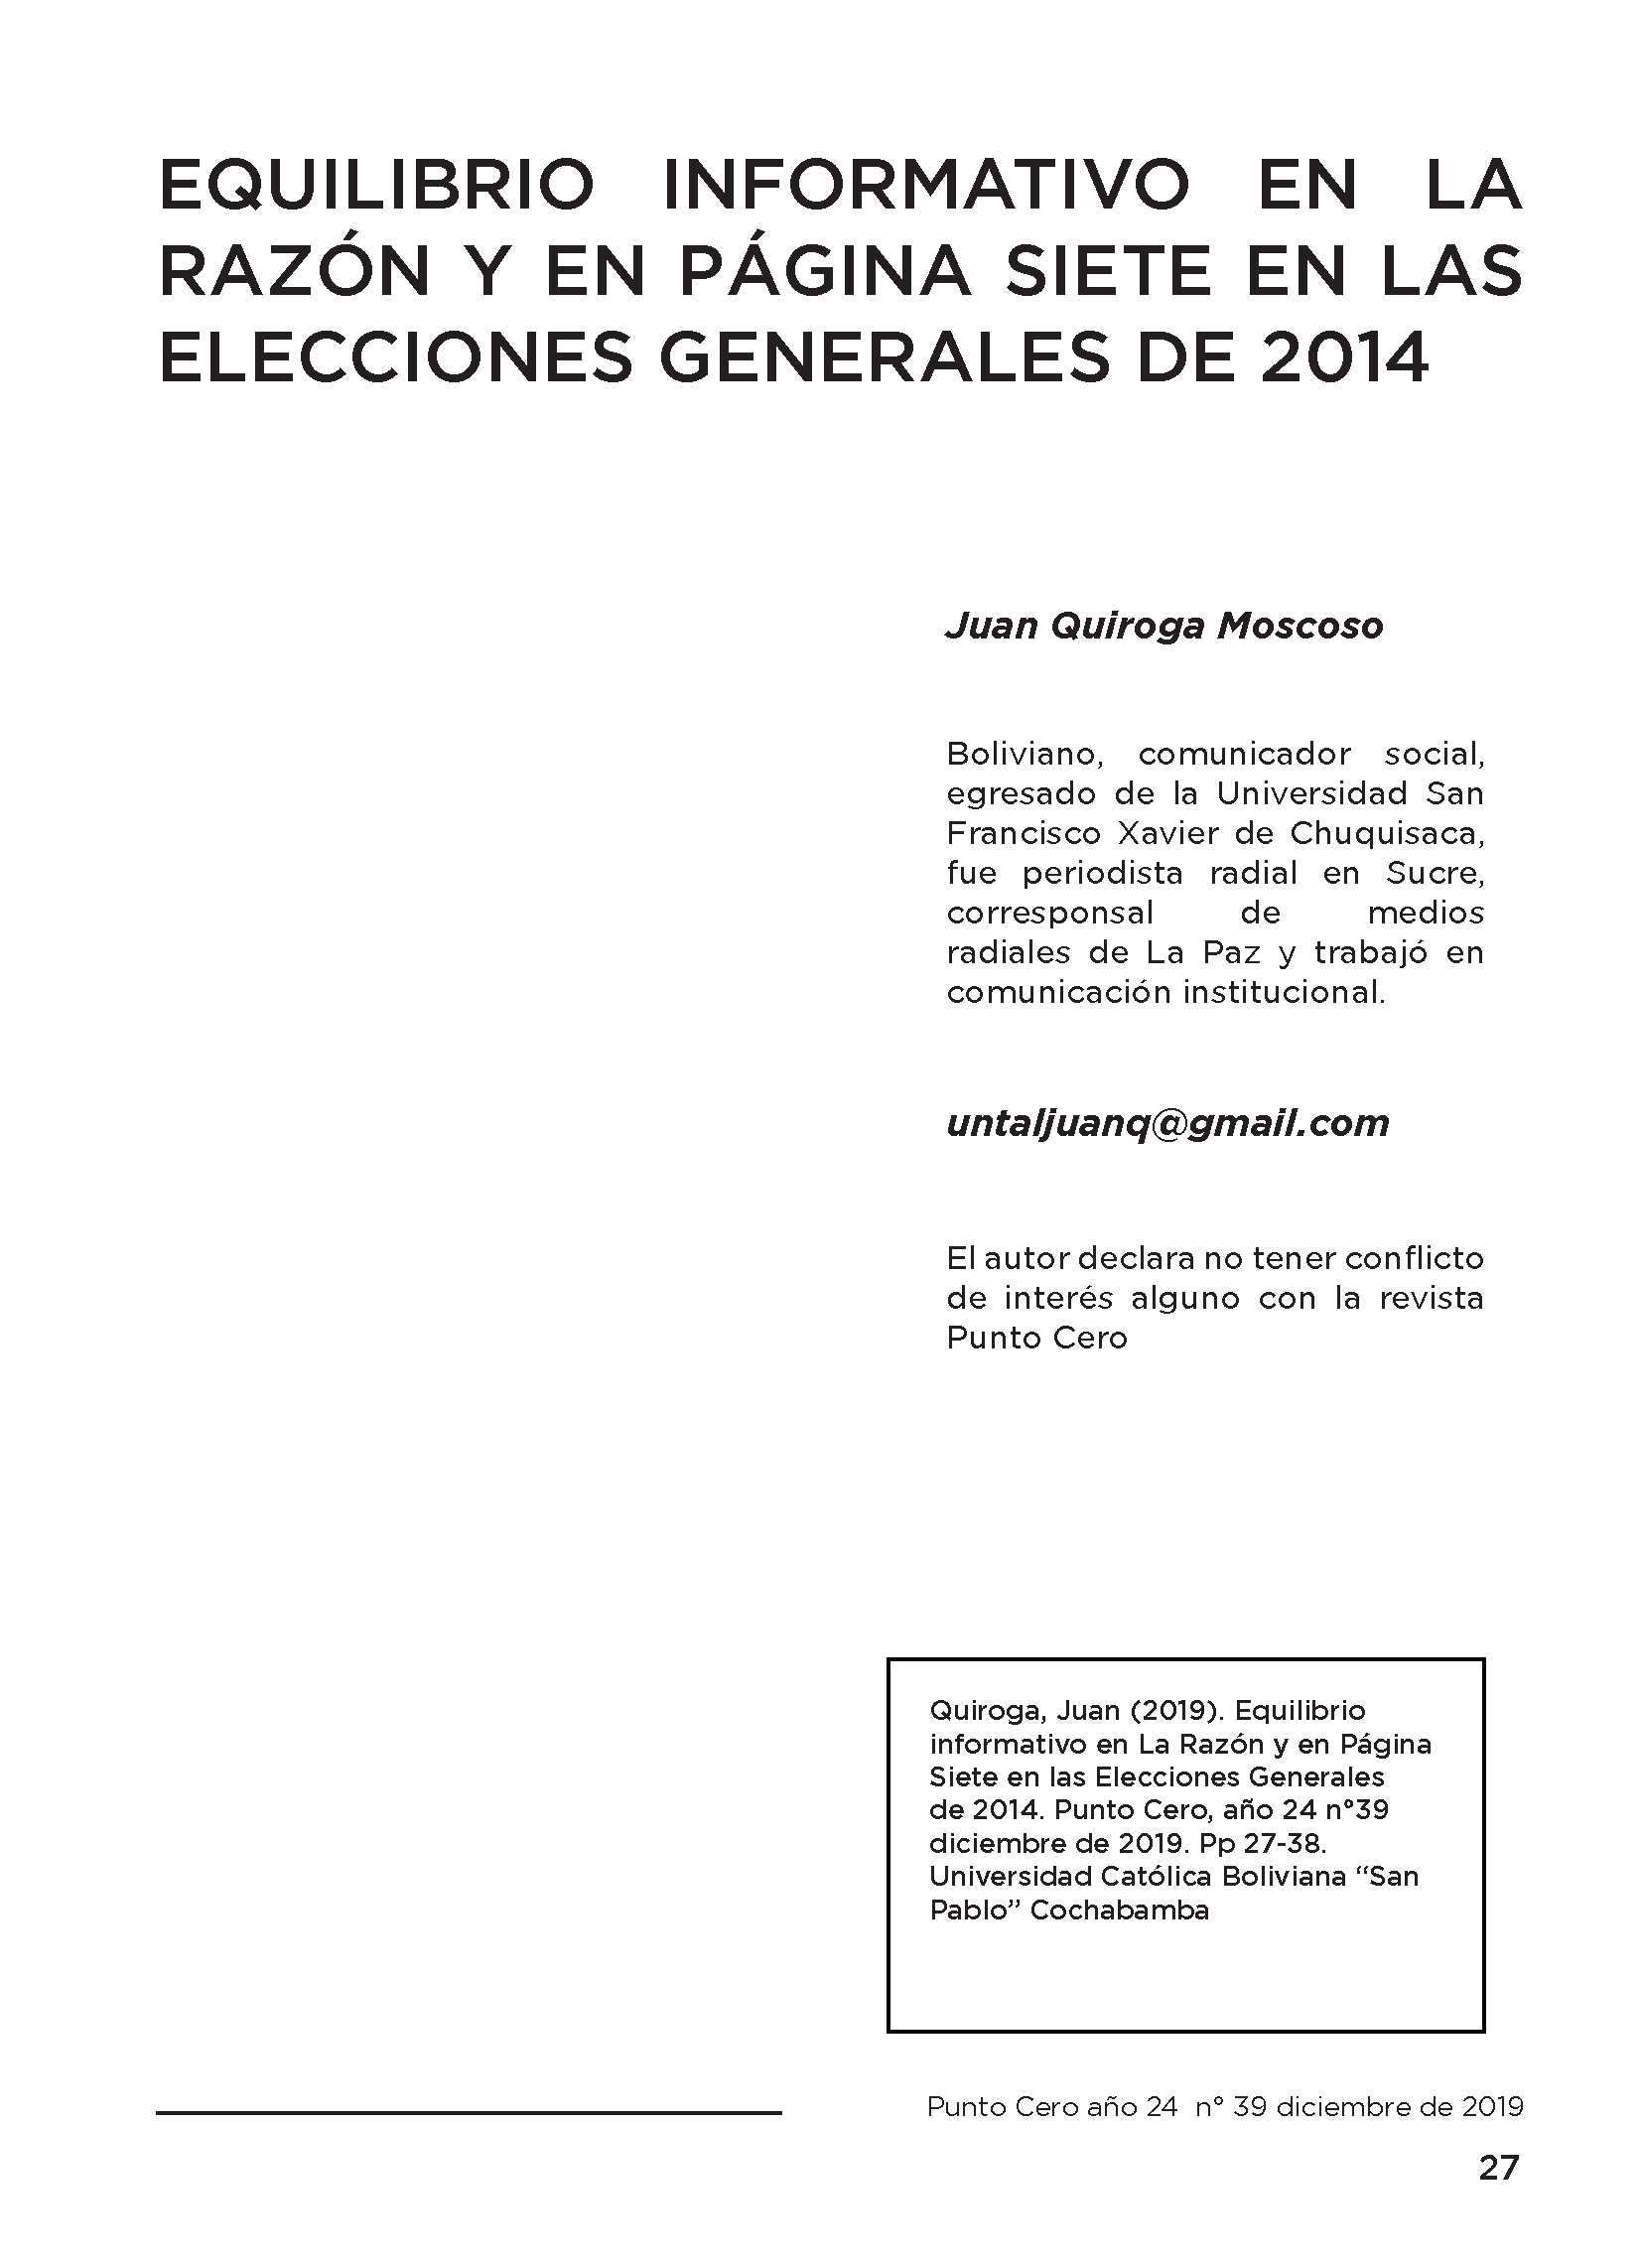 Equilibrio informativo en La Razón y en Página Siete en las  Elecciones Generales de 2014